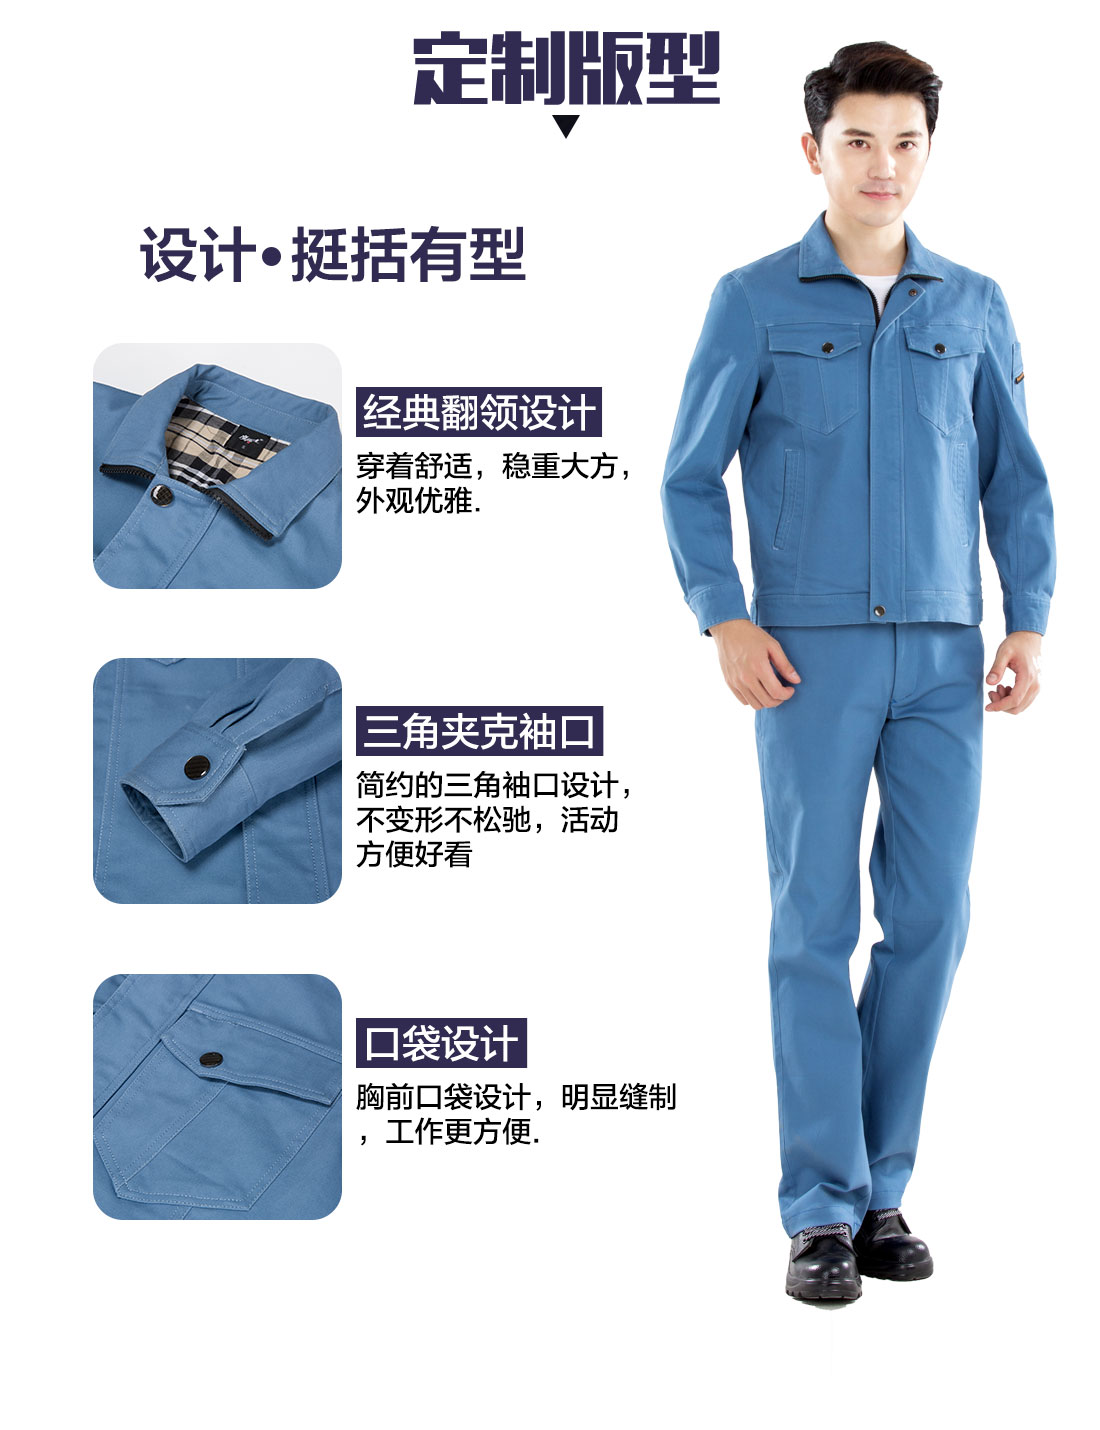 浅蓝色秋季工作服的3D立体版型设计